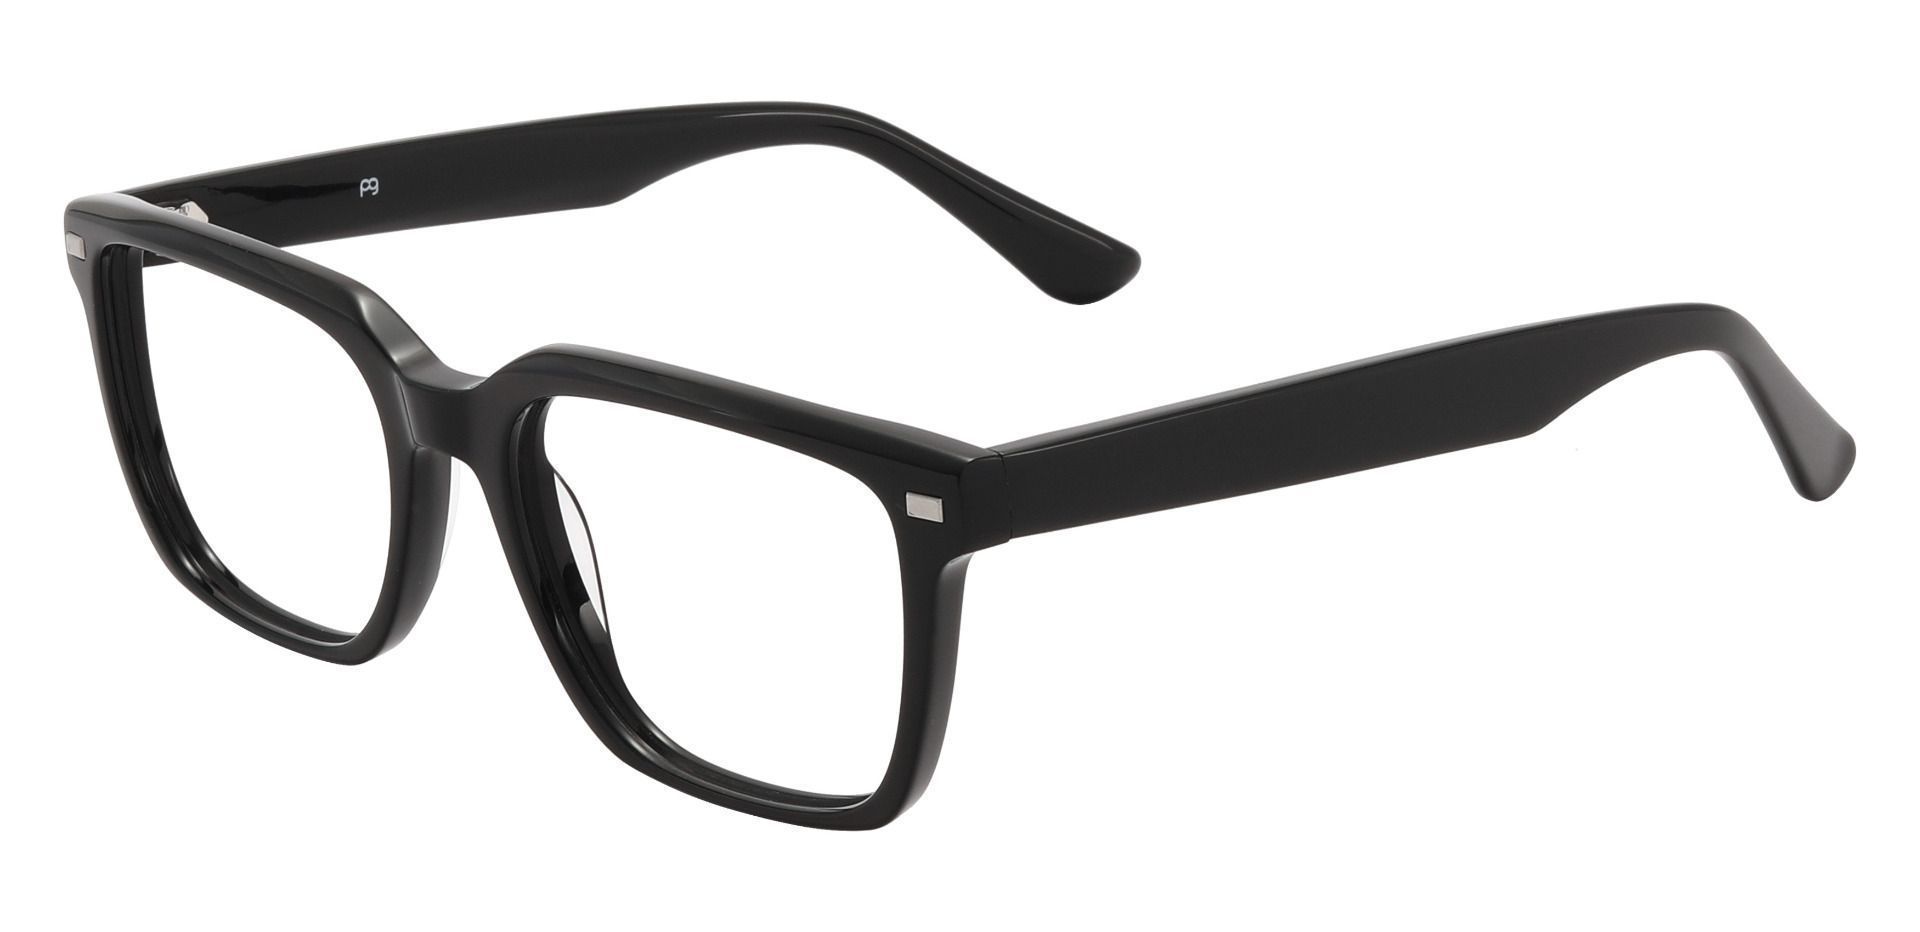 Monte Rectangle Prescription Glasses - Black